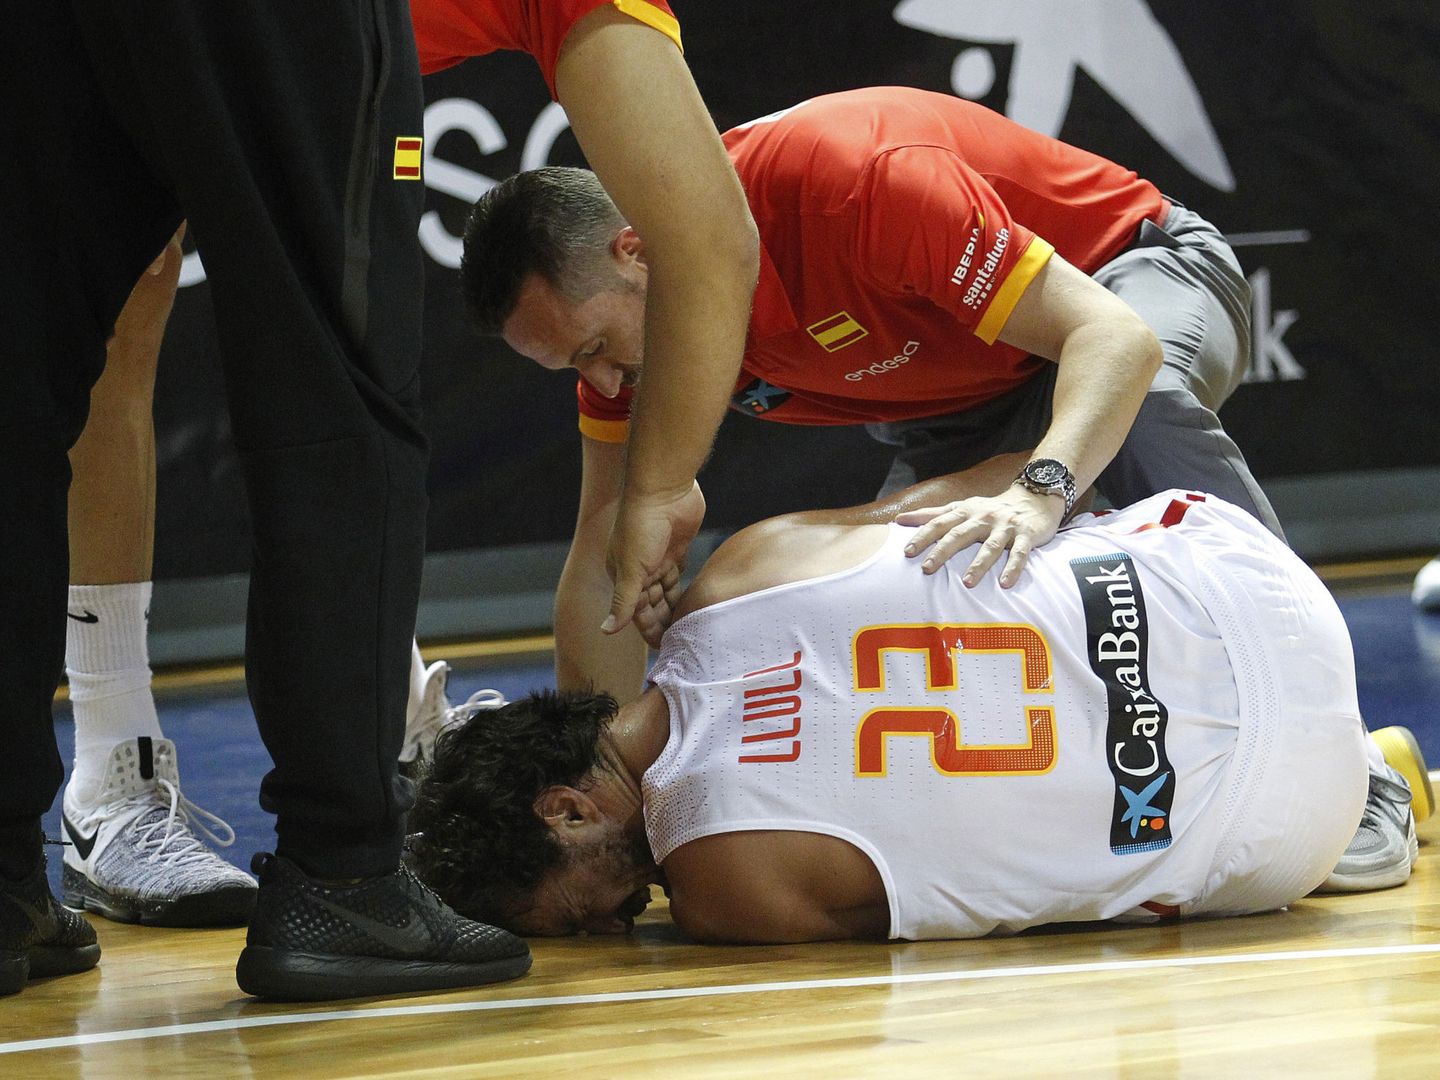 Sergio Llull, momentos después de lesionarse este miércoles en el España-Bélgica disputado en Tenerife. (EFE)